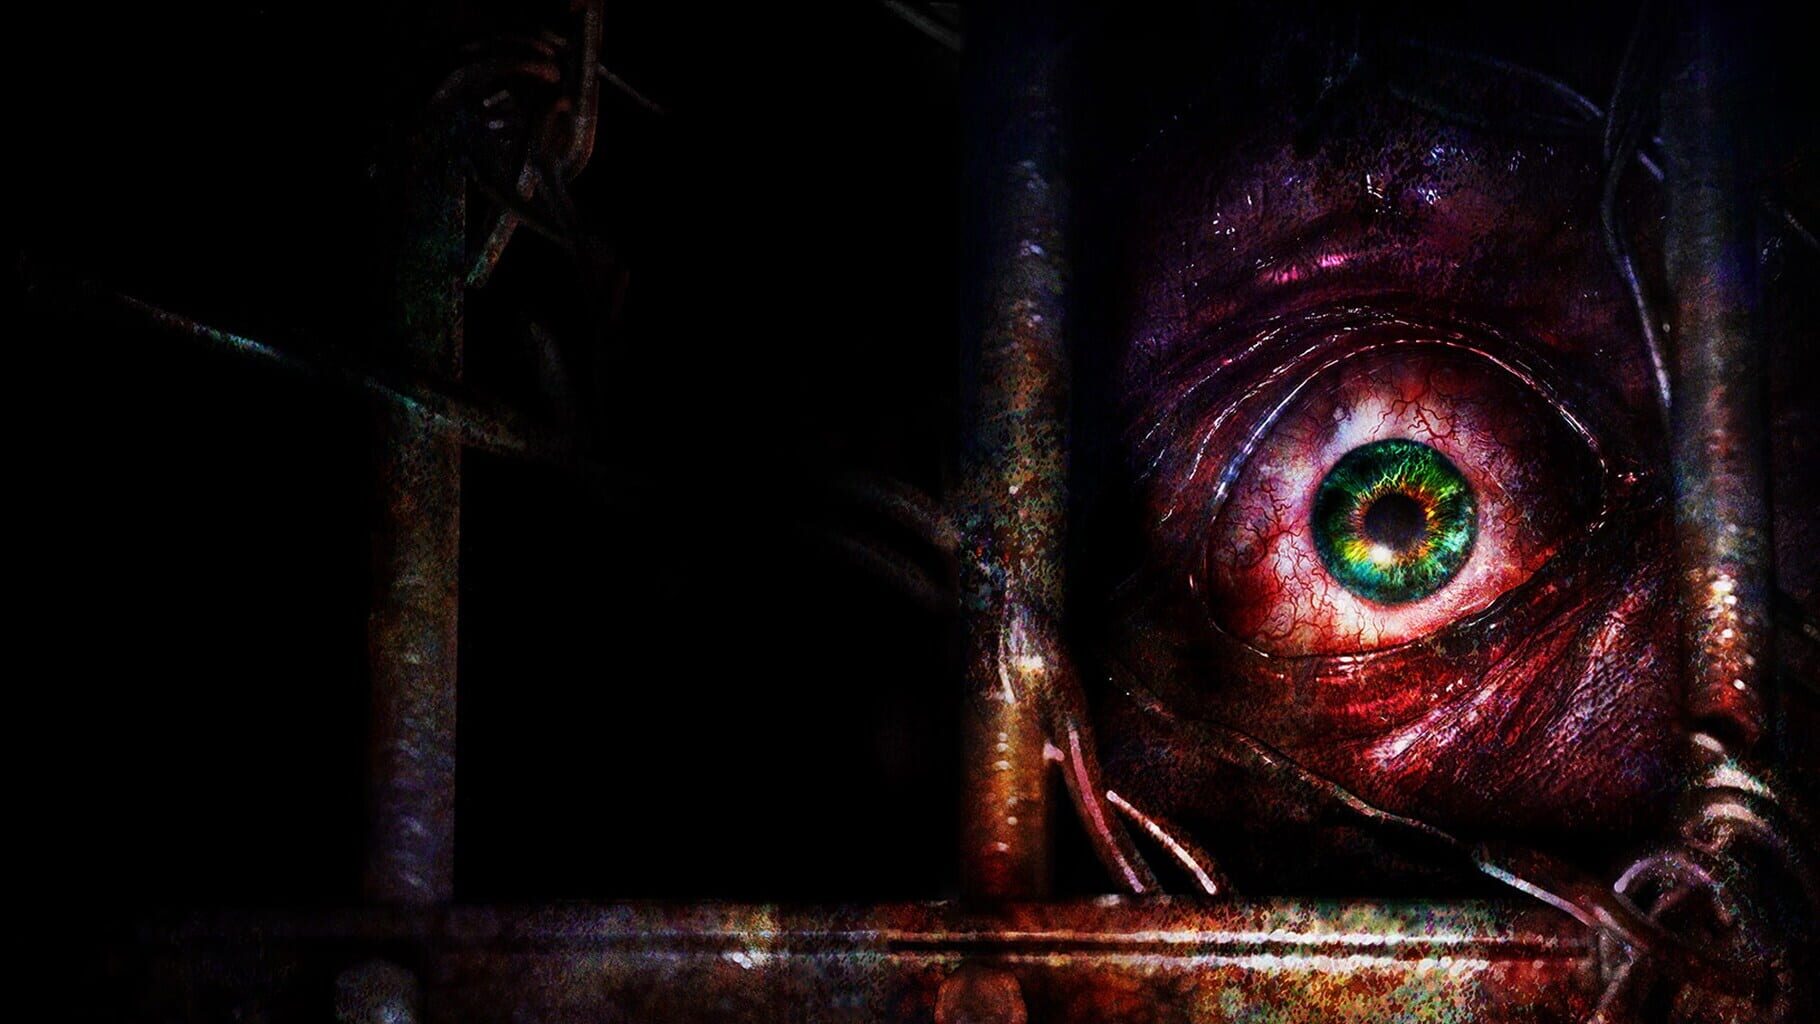 Arte - Resident Evil: Revelations 2 - Deluxe Edition